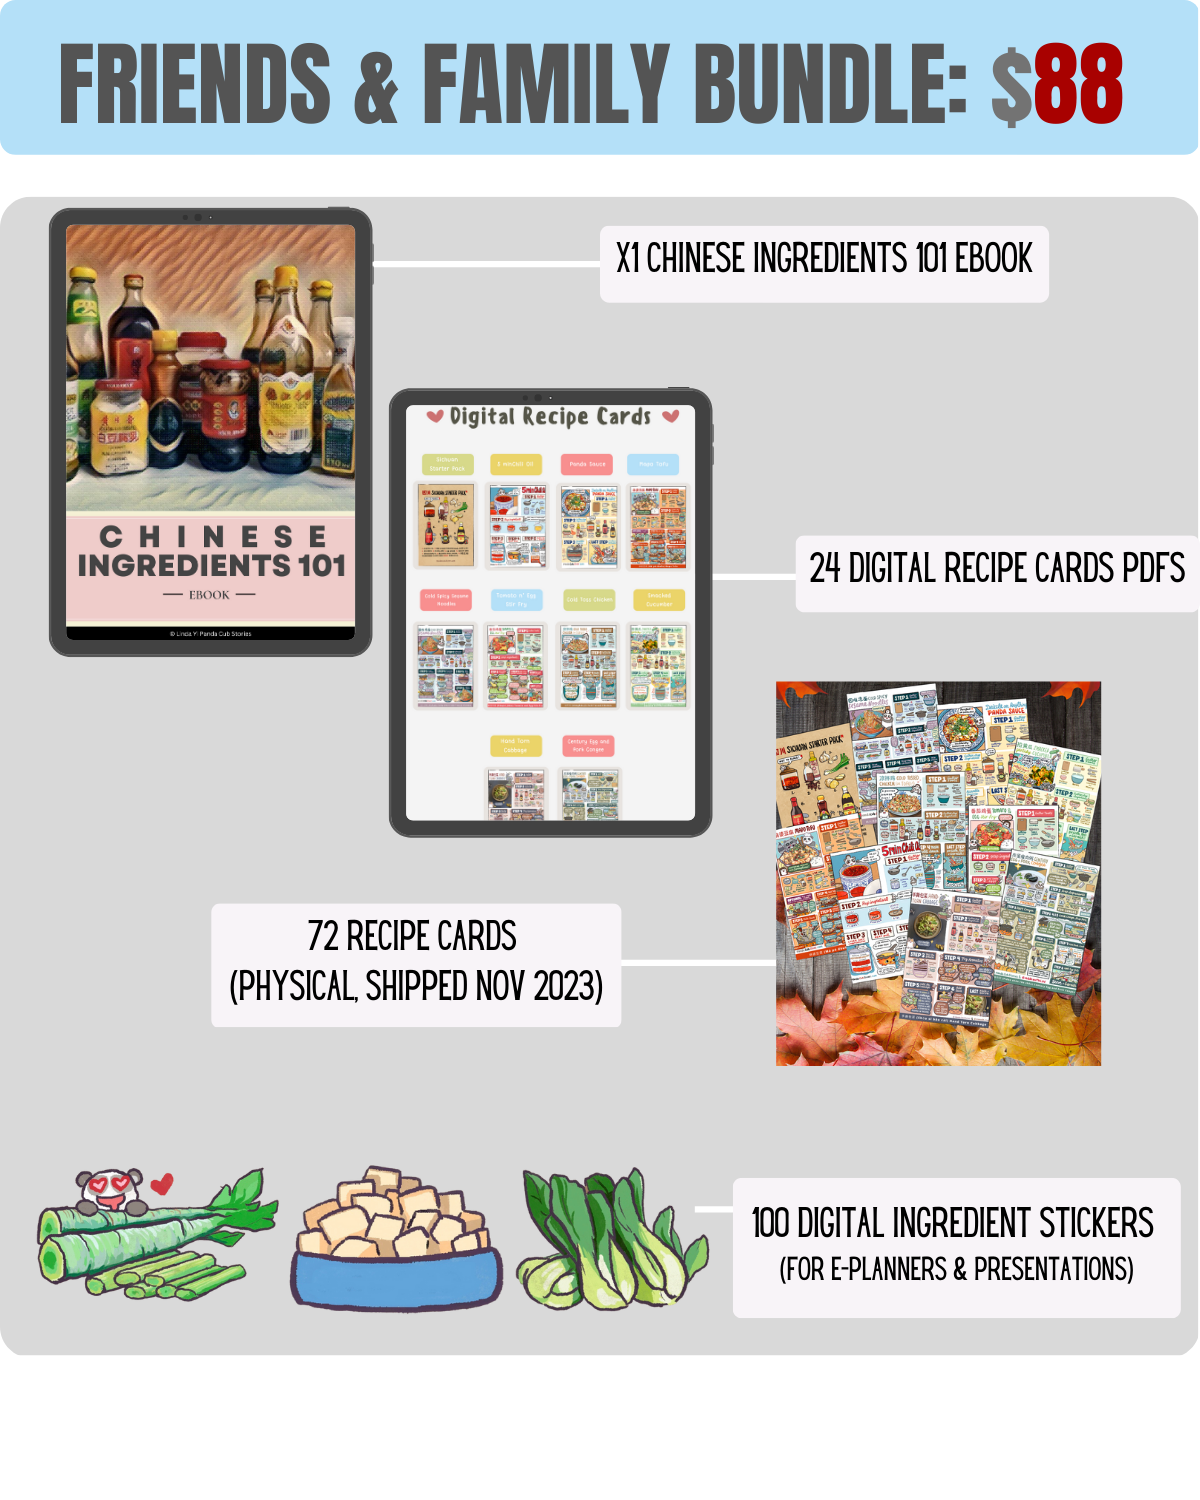 Make 100 Chinese Recipe Card Drawings by Linda Yi — Kickstarter